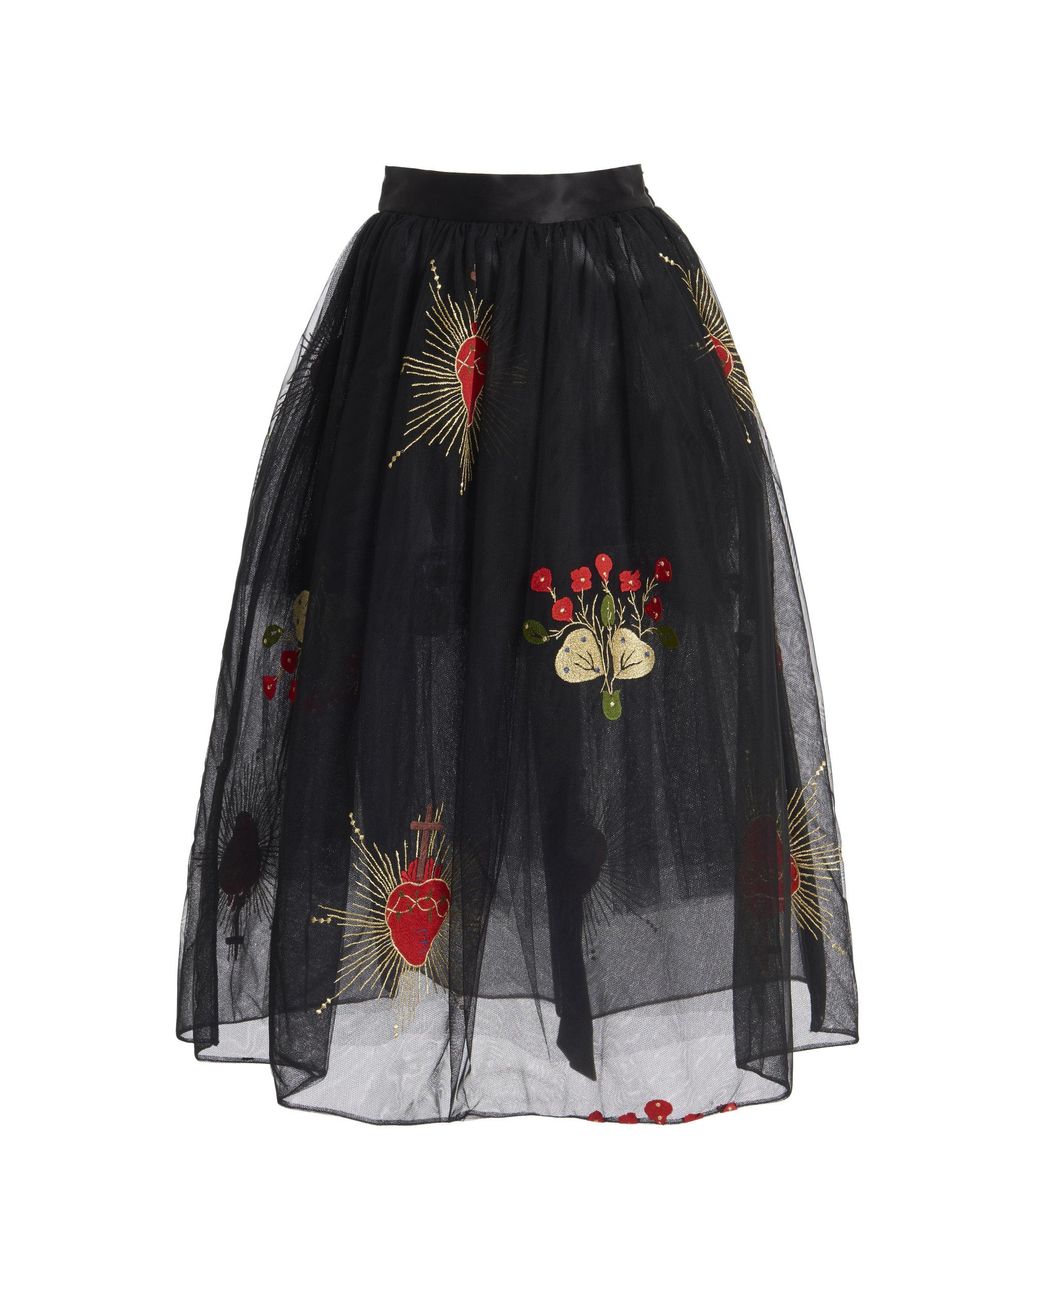 Simone Rocha Draped Tulle Midi Skirt in Black - Lyst